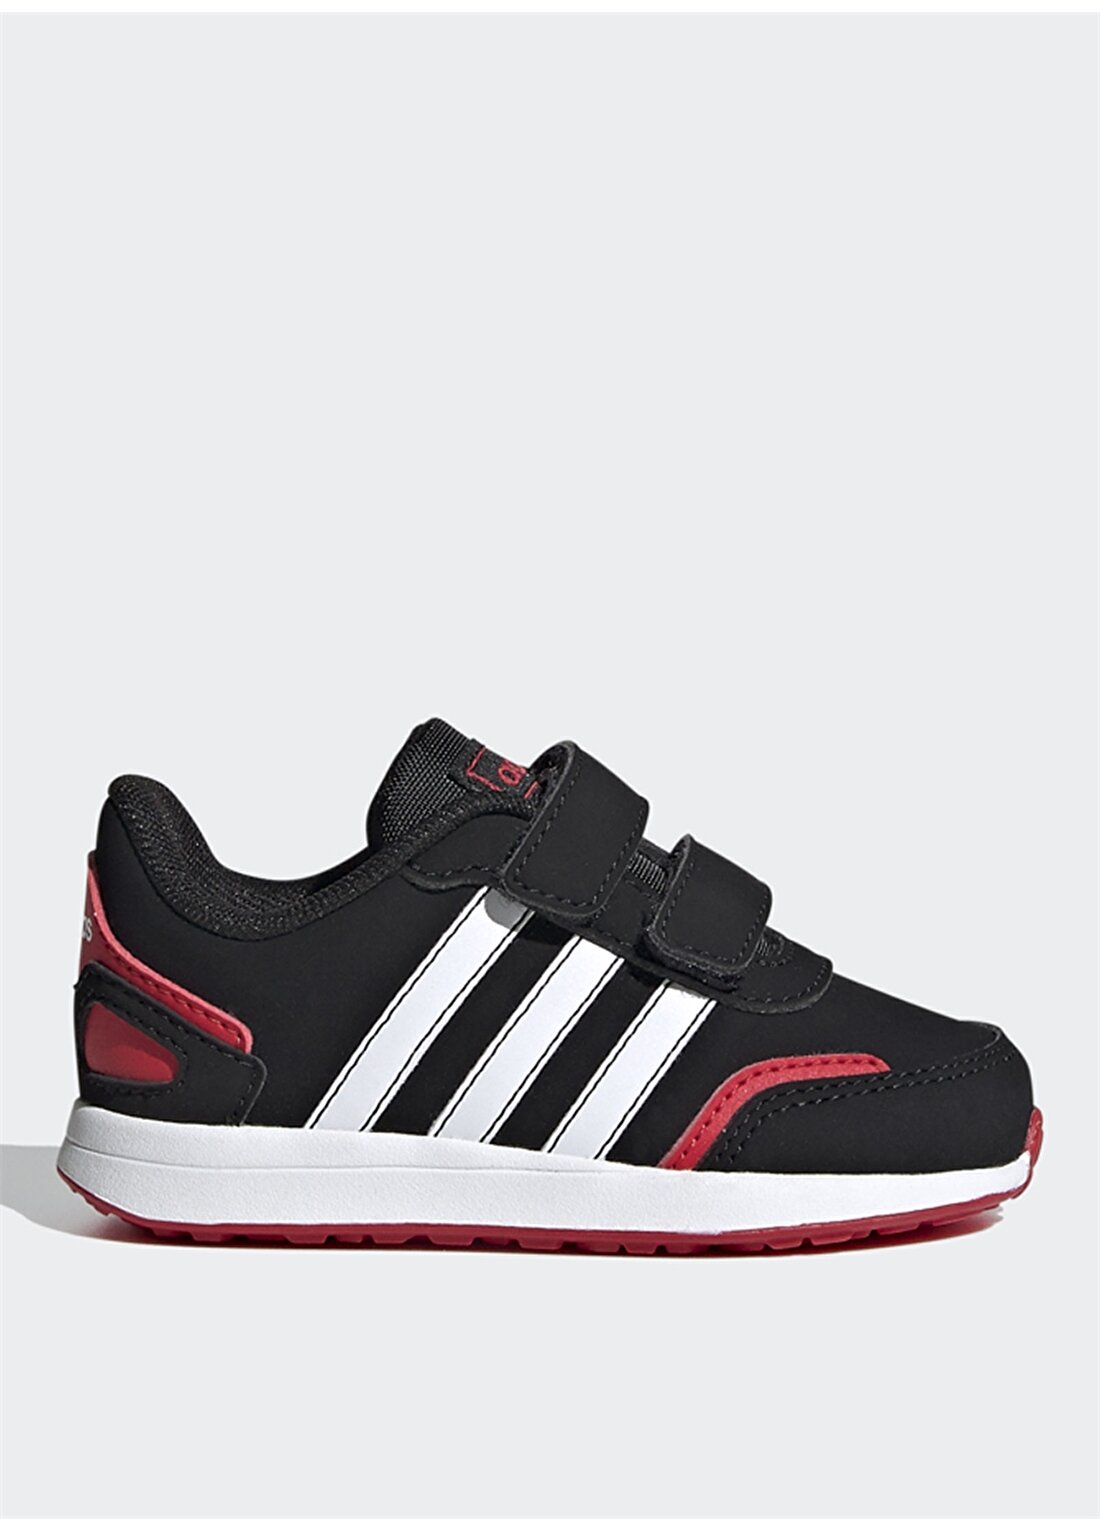 Adidas Erkek Çocuk Siyah-Beyaz-Kırmızı Yürüyüş Ayakkabısı